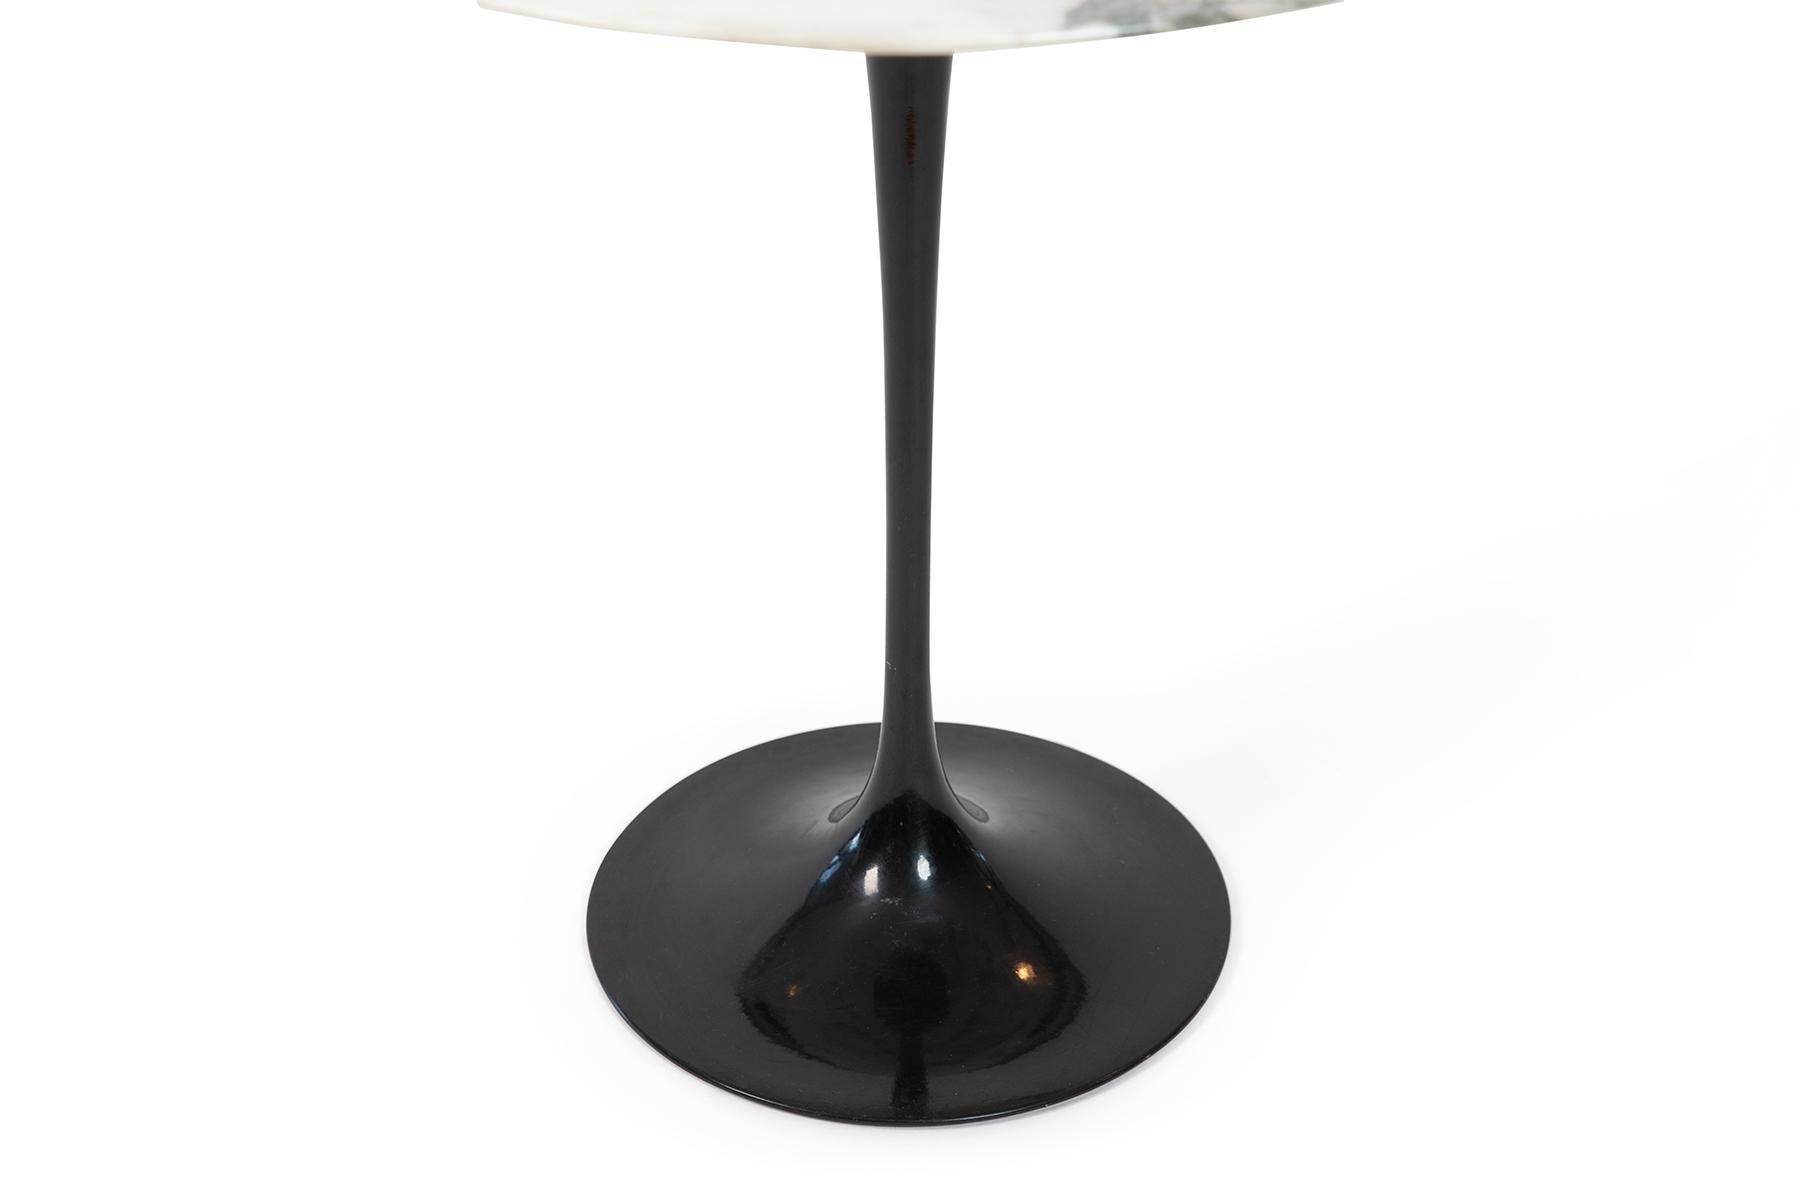 North American Eero Saarinen Knoll Calacatta Marble Side Table